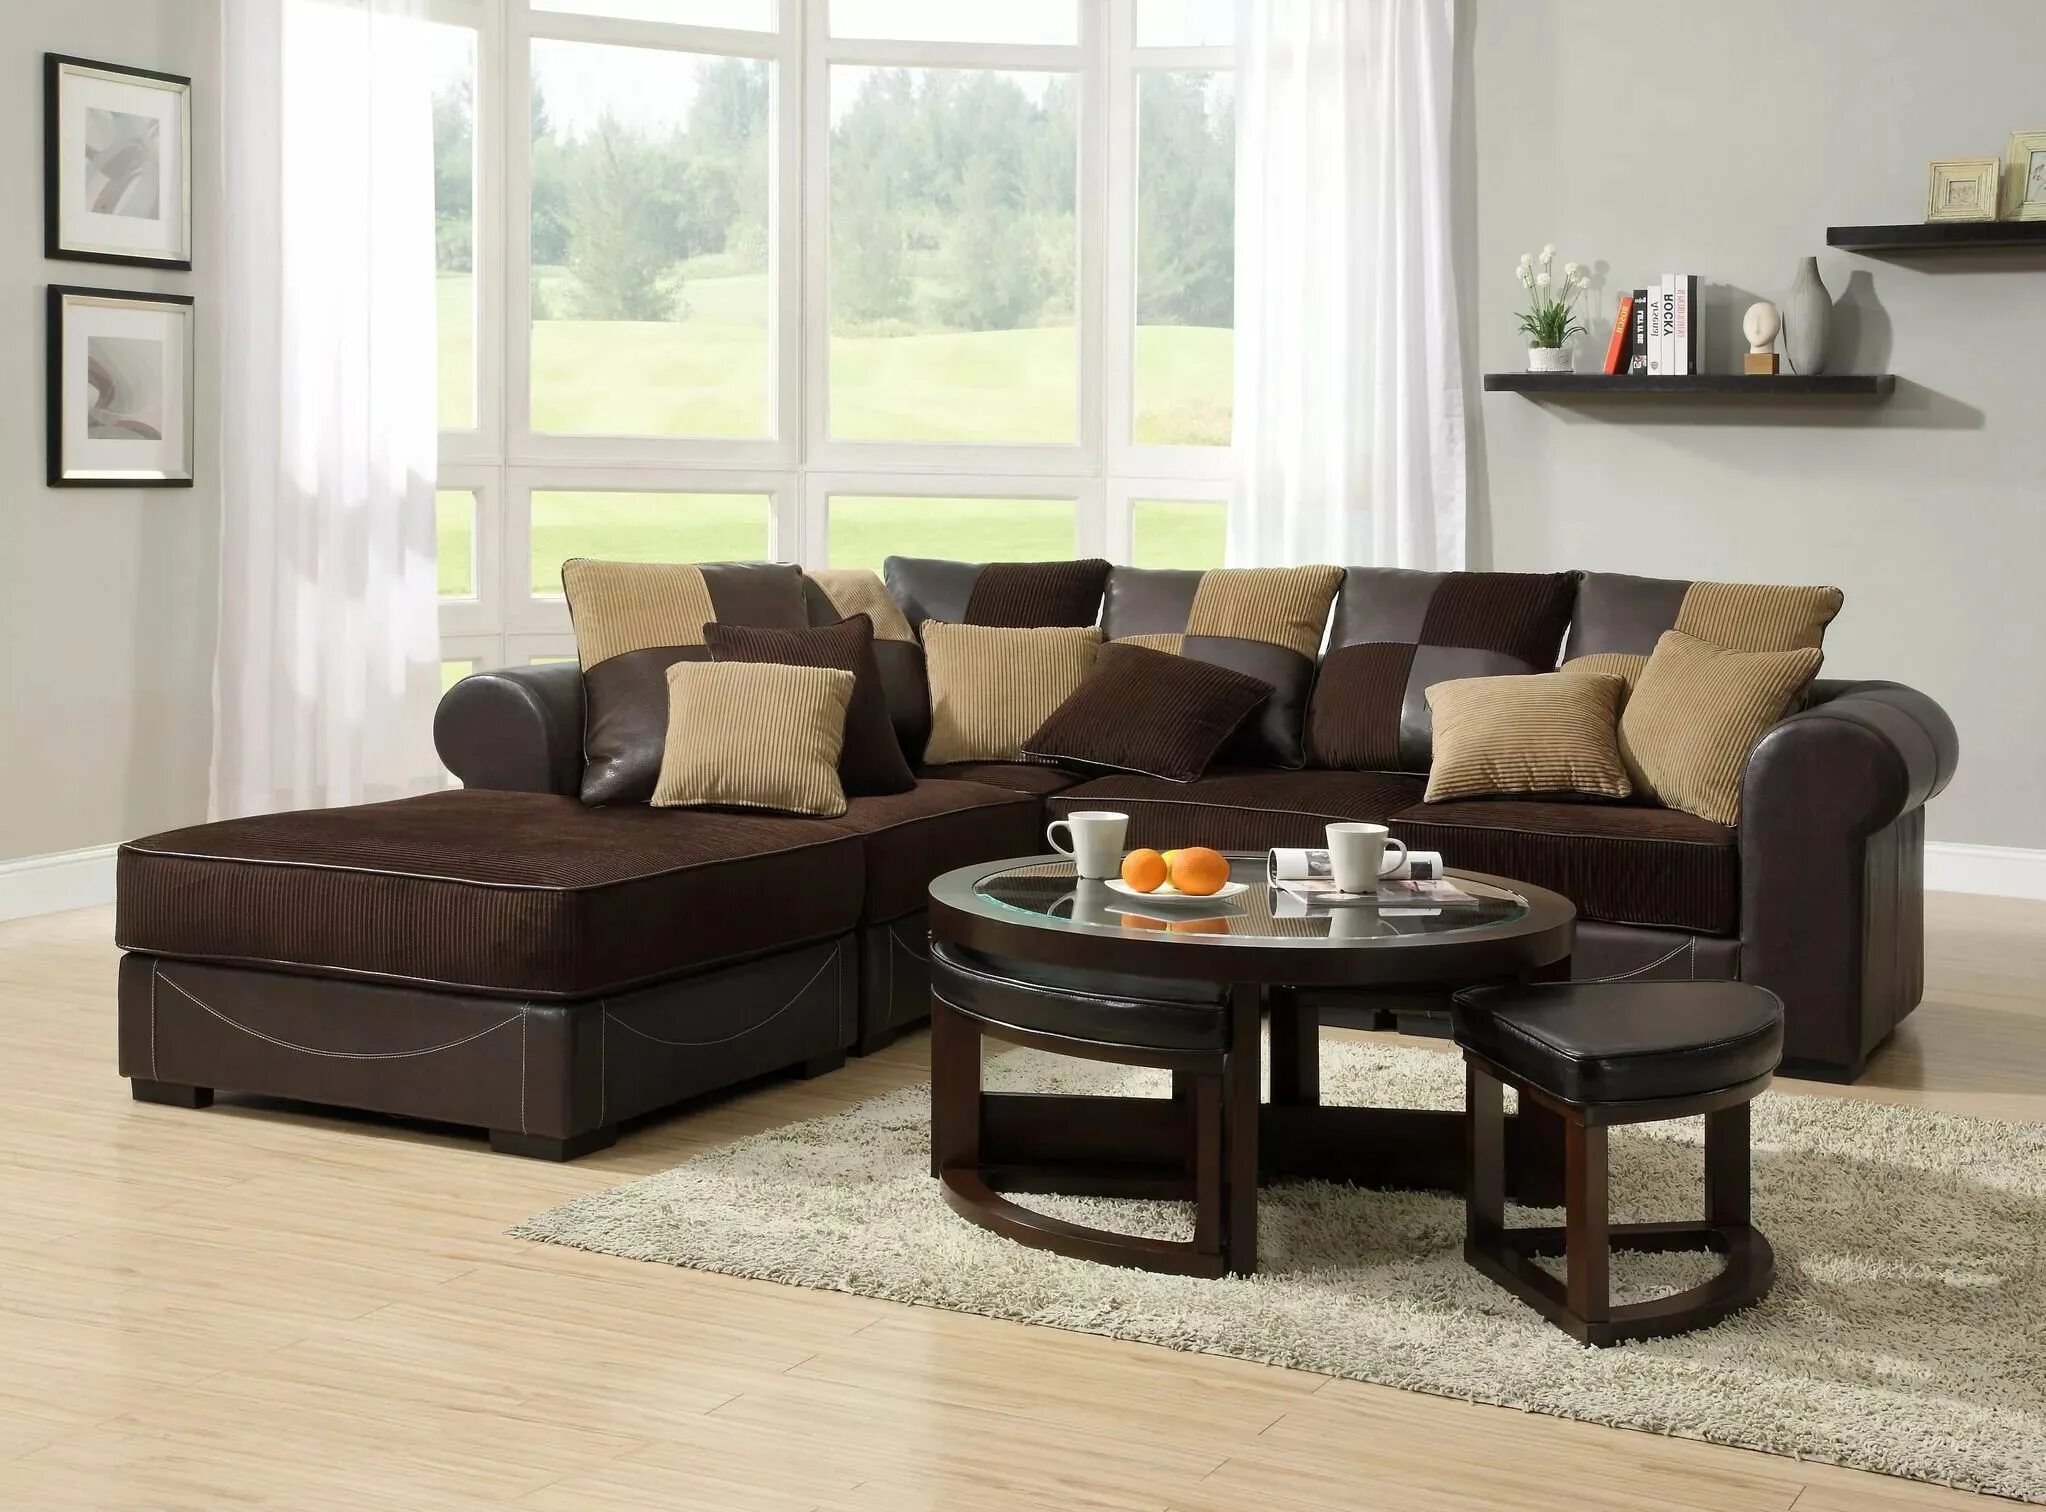 Диван шоколад. Диван шоколадного цвета. Светло коричневый диван. Диван в интерьере. Шоколадный диван в интерьере.